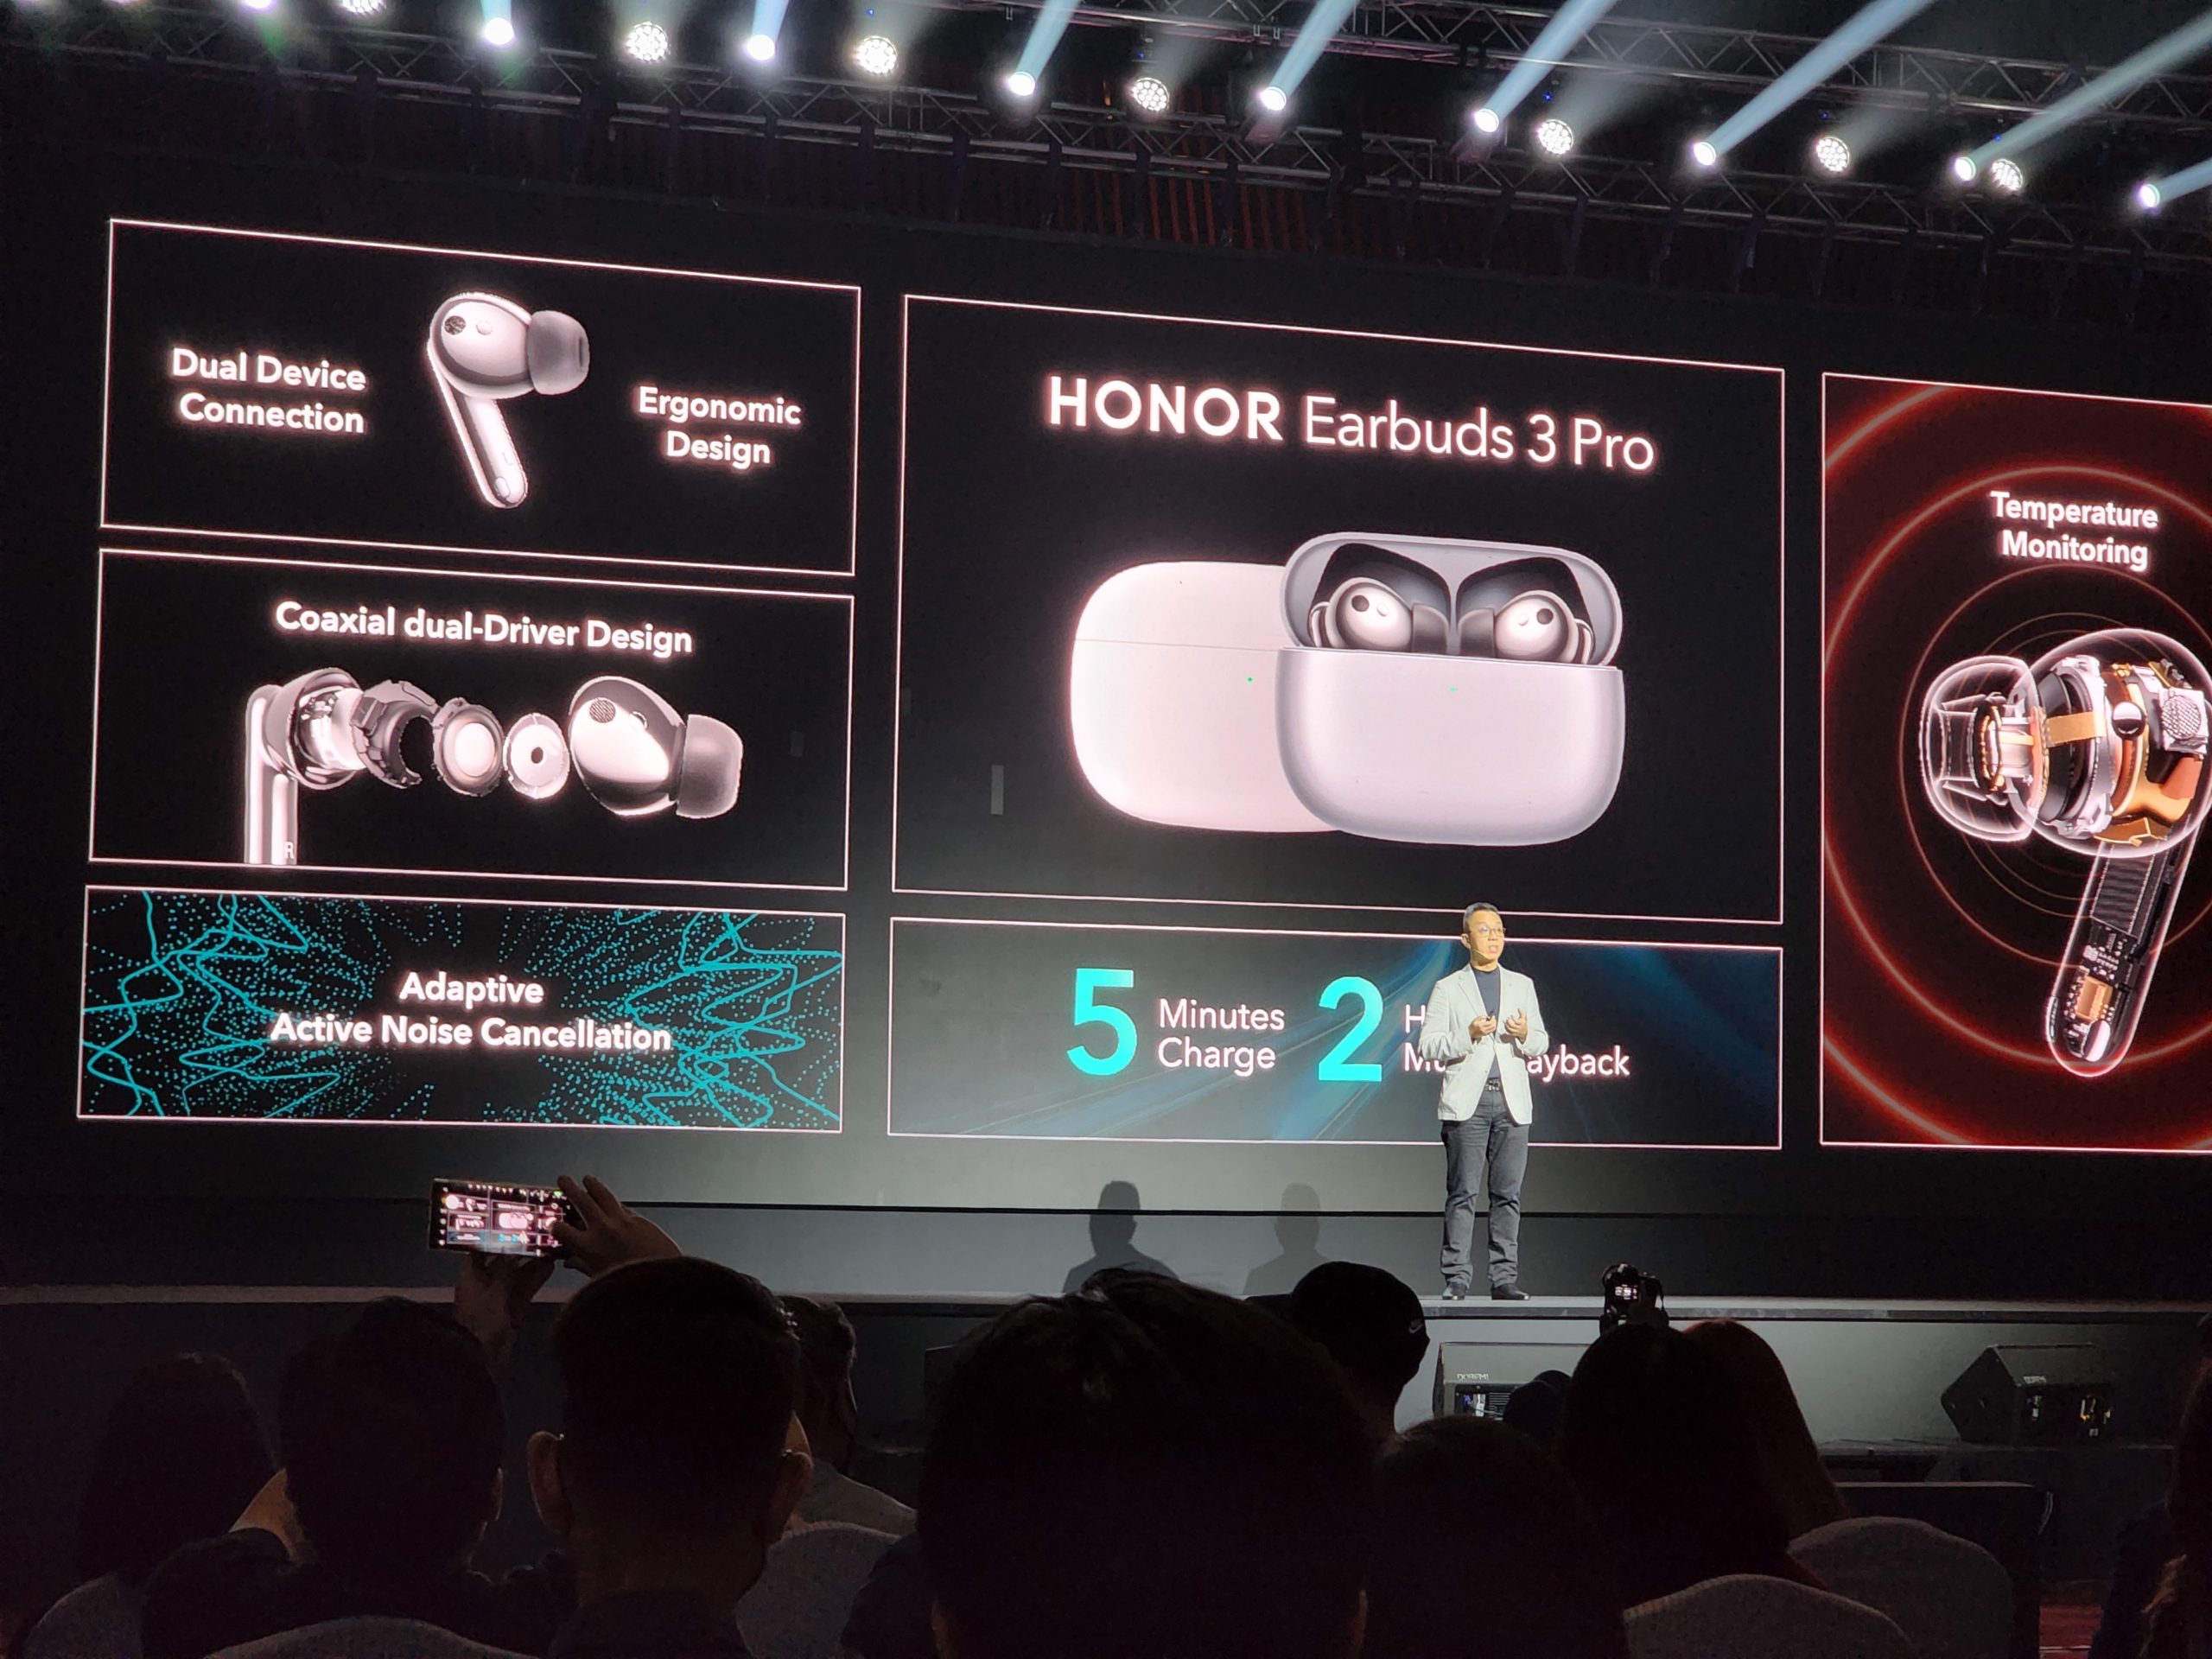 HONOR Earbuds 3 Pro kini rasmi di Malaysia pada harga RM 699 12